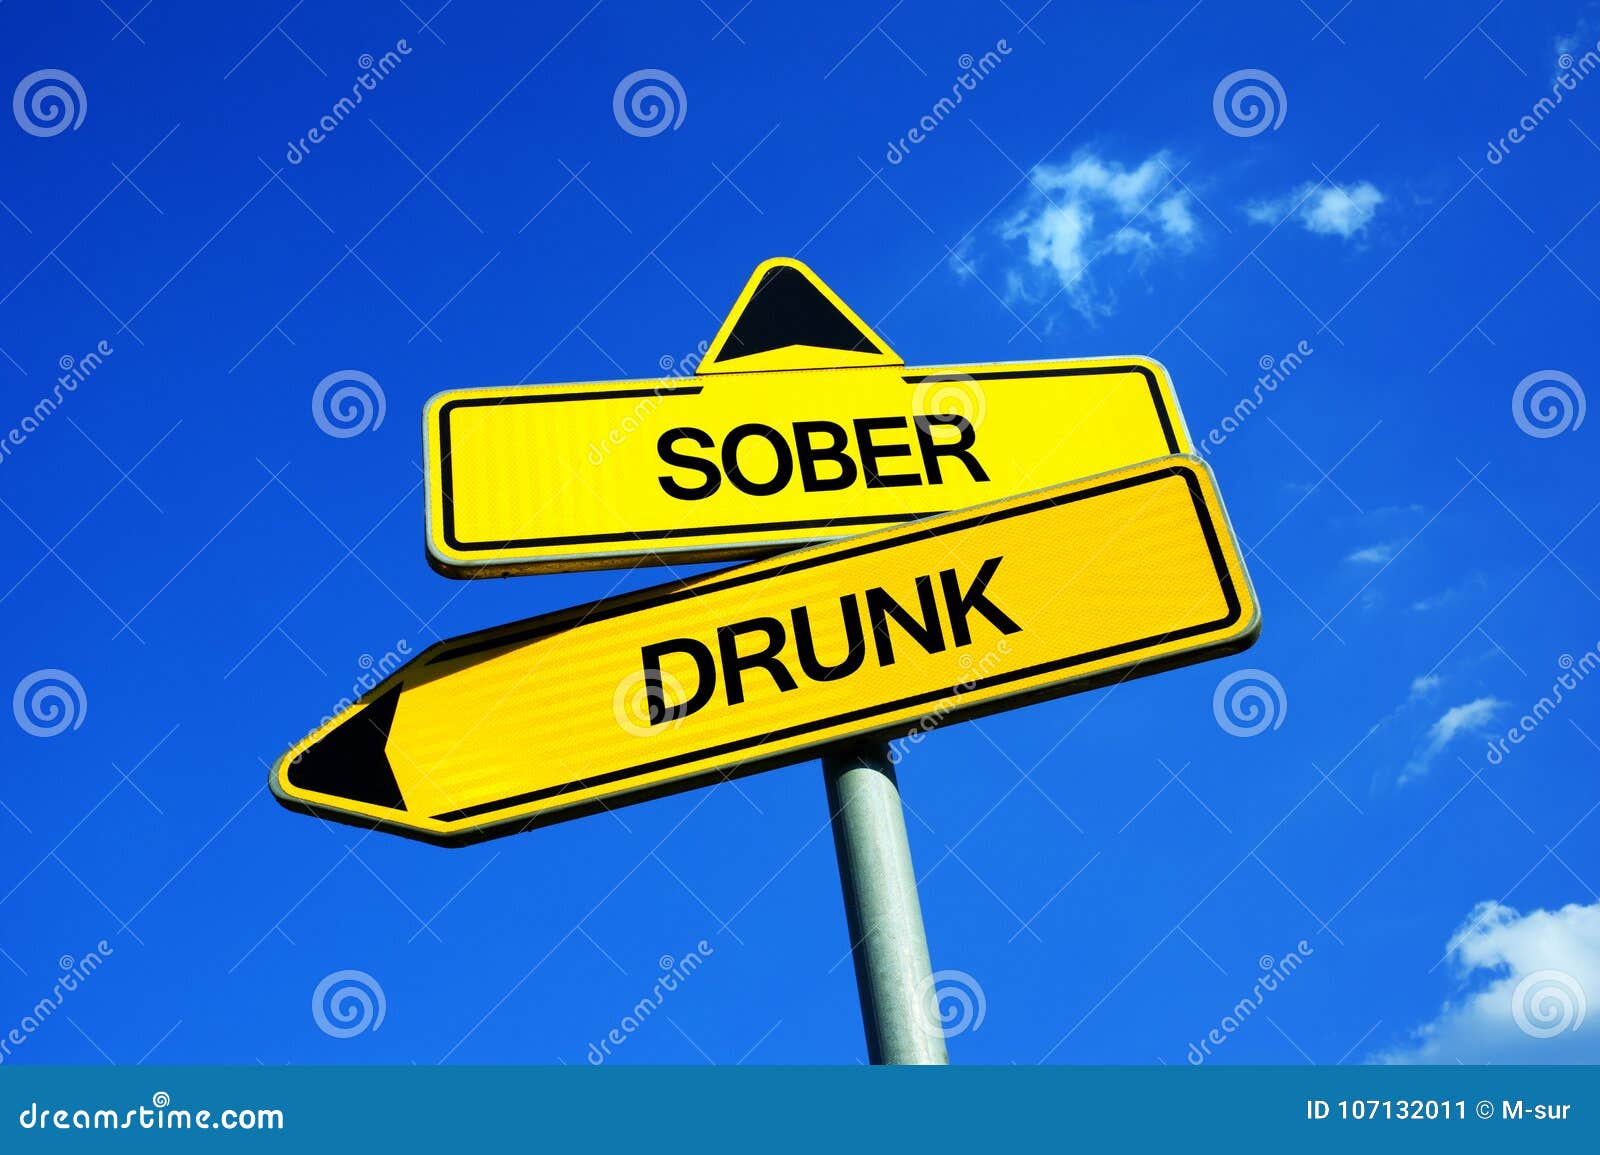 sober vs drunk